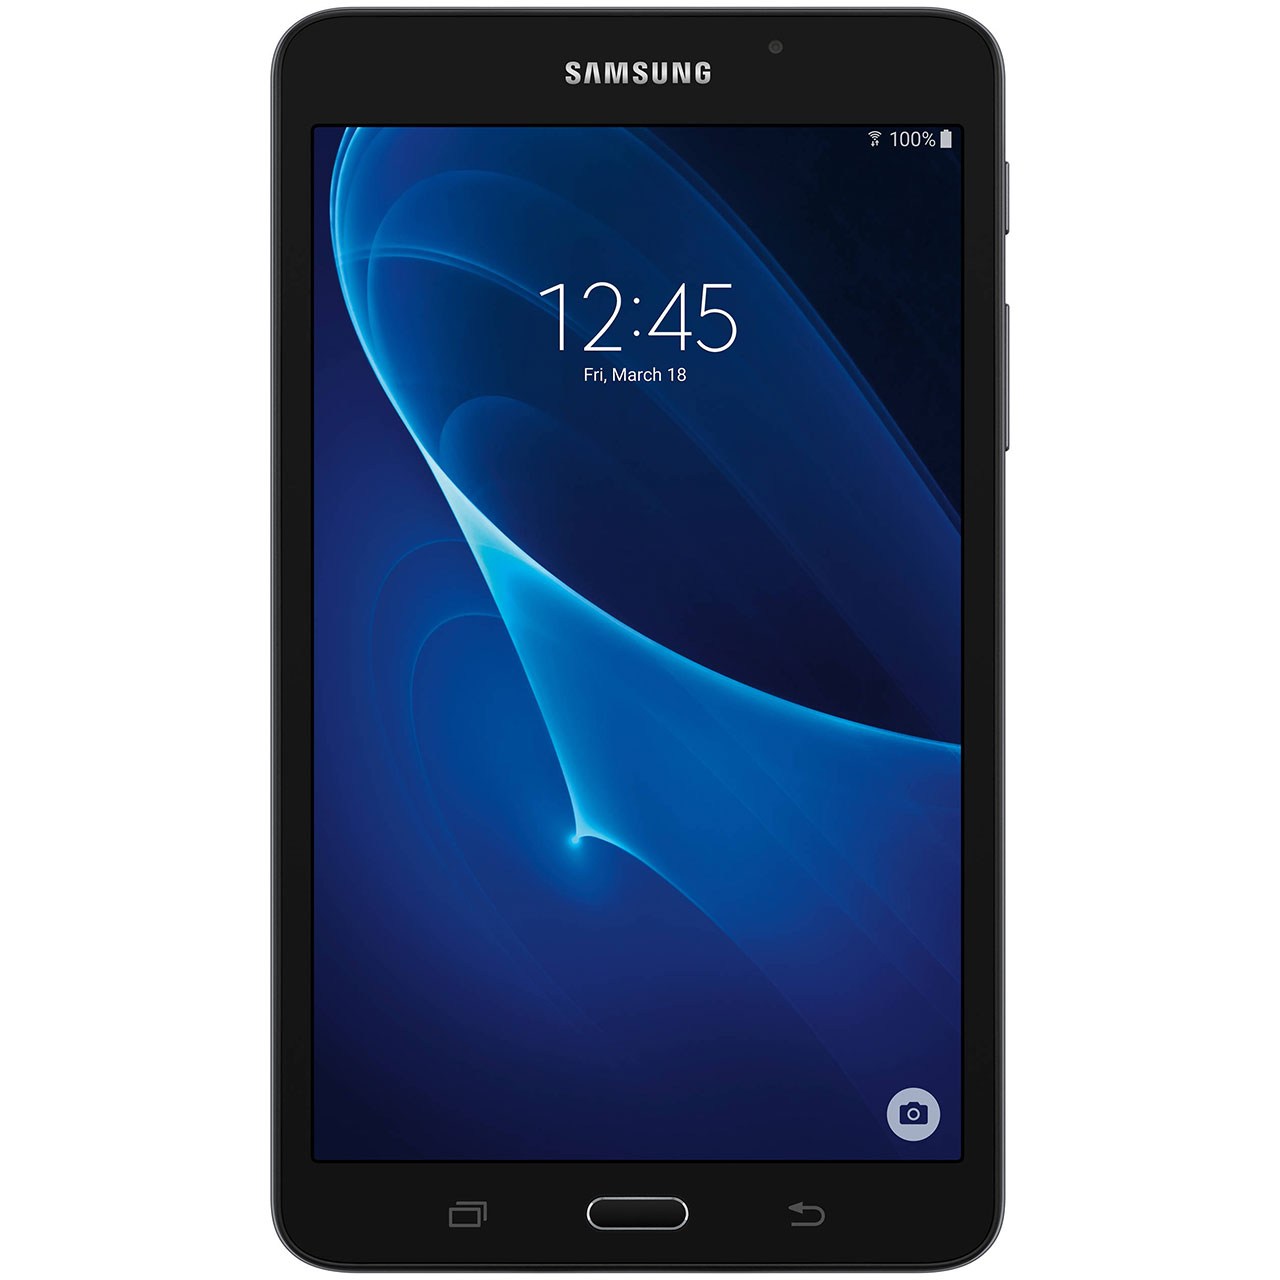 تبلت سامسونگ مدل Galaxy Tab A SM-T285 4G سال 2016 ظرفیت 8 گیگابایت - با برچسب قیمت مصرف کننده